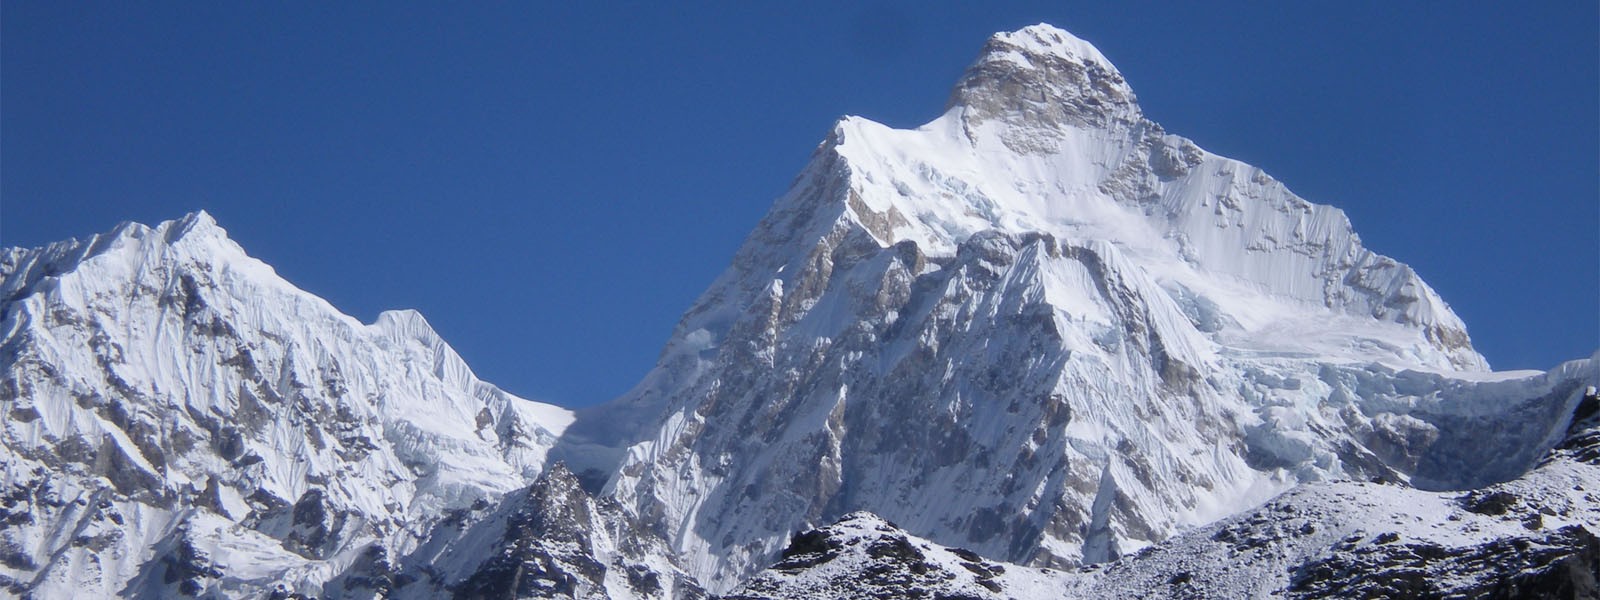 Jannu Himal Climbing